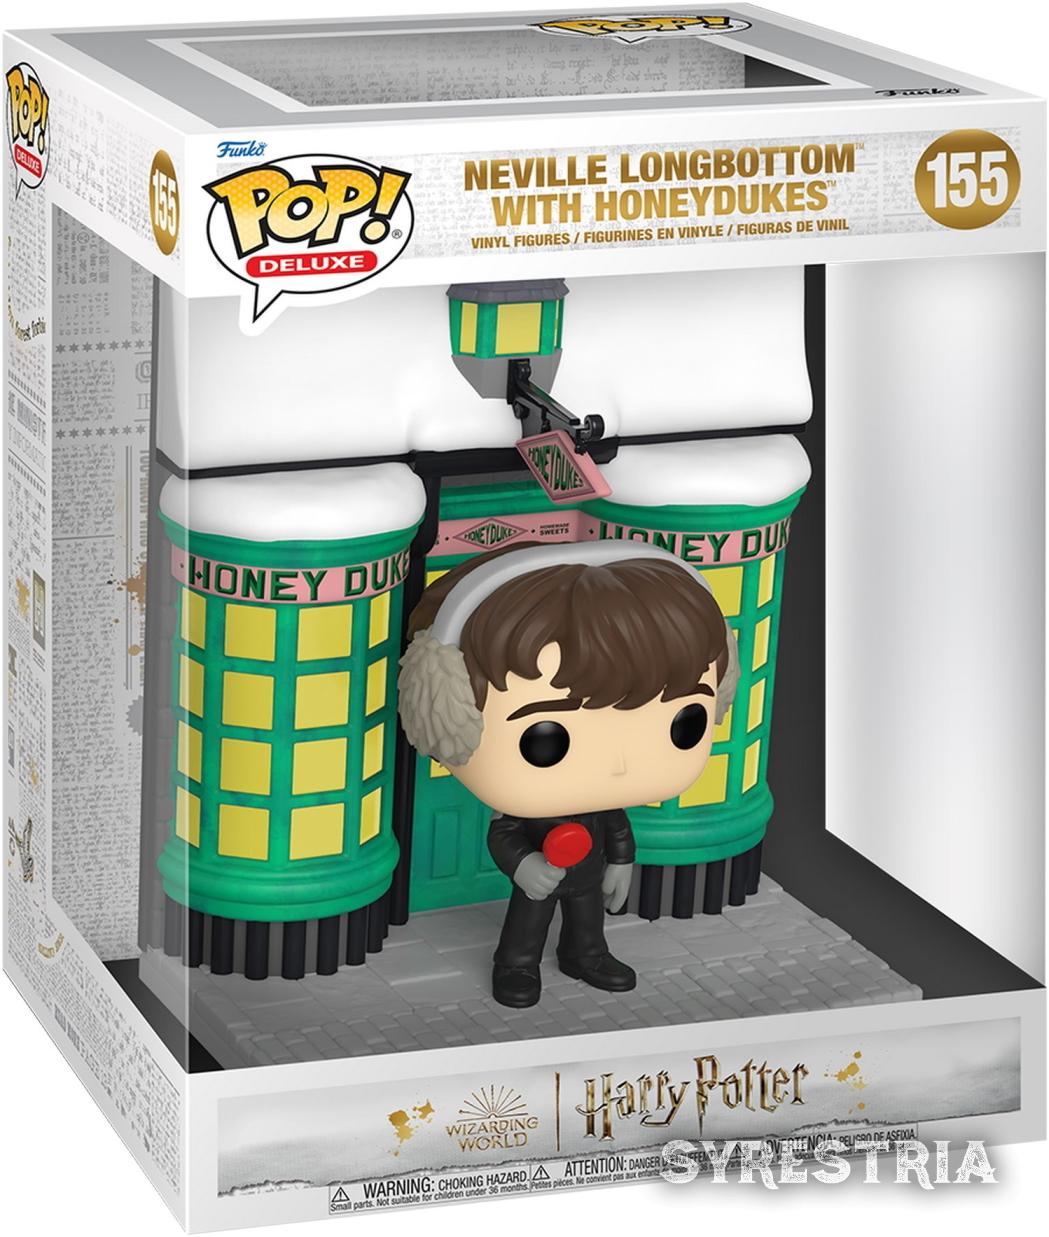 Harry Potter - Neville Longbottem with Honeydukes 155 - Funko Pop! Deluxe